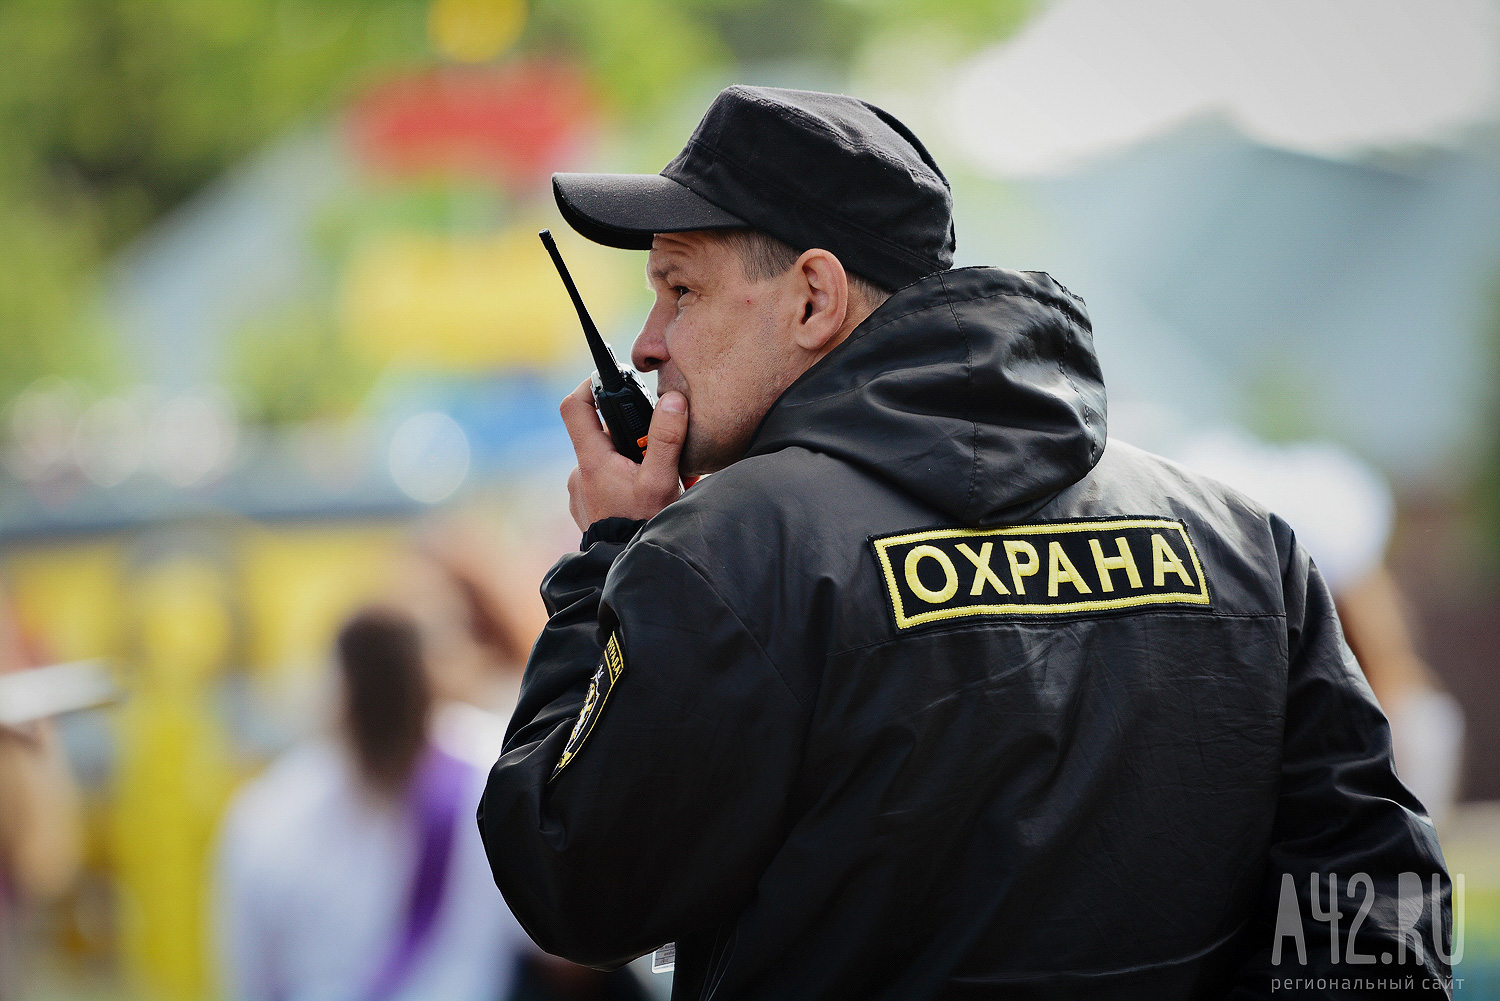 Повредивший неоплаченный товар кузбассовец попал в полицию после конфликта с охранником 